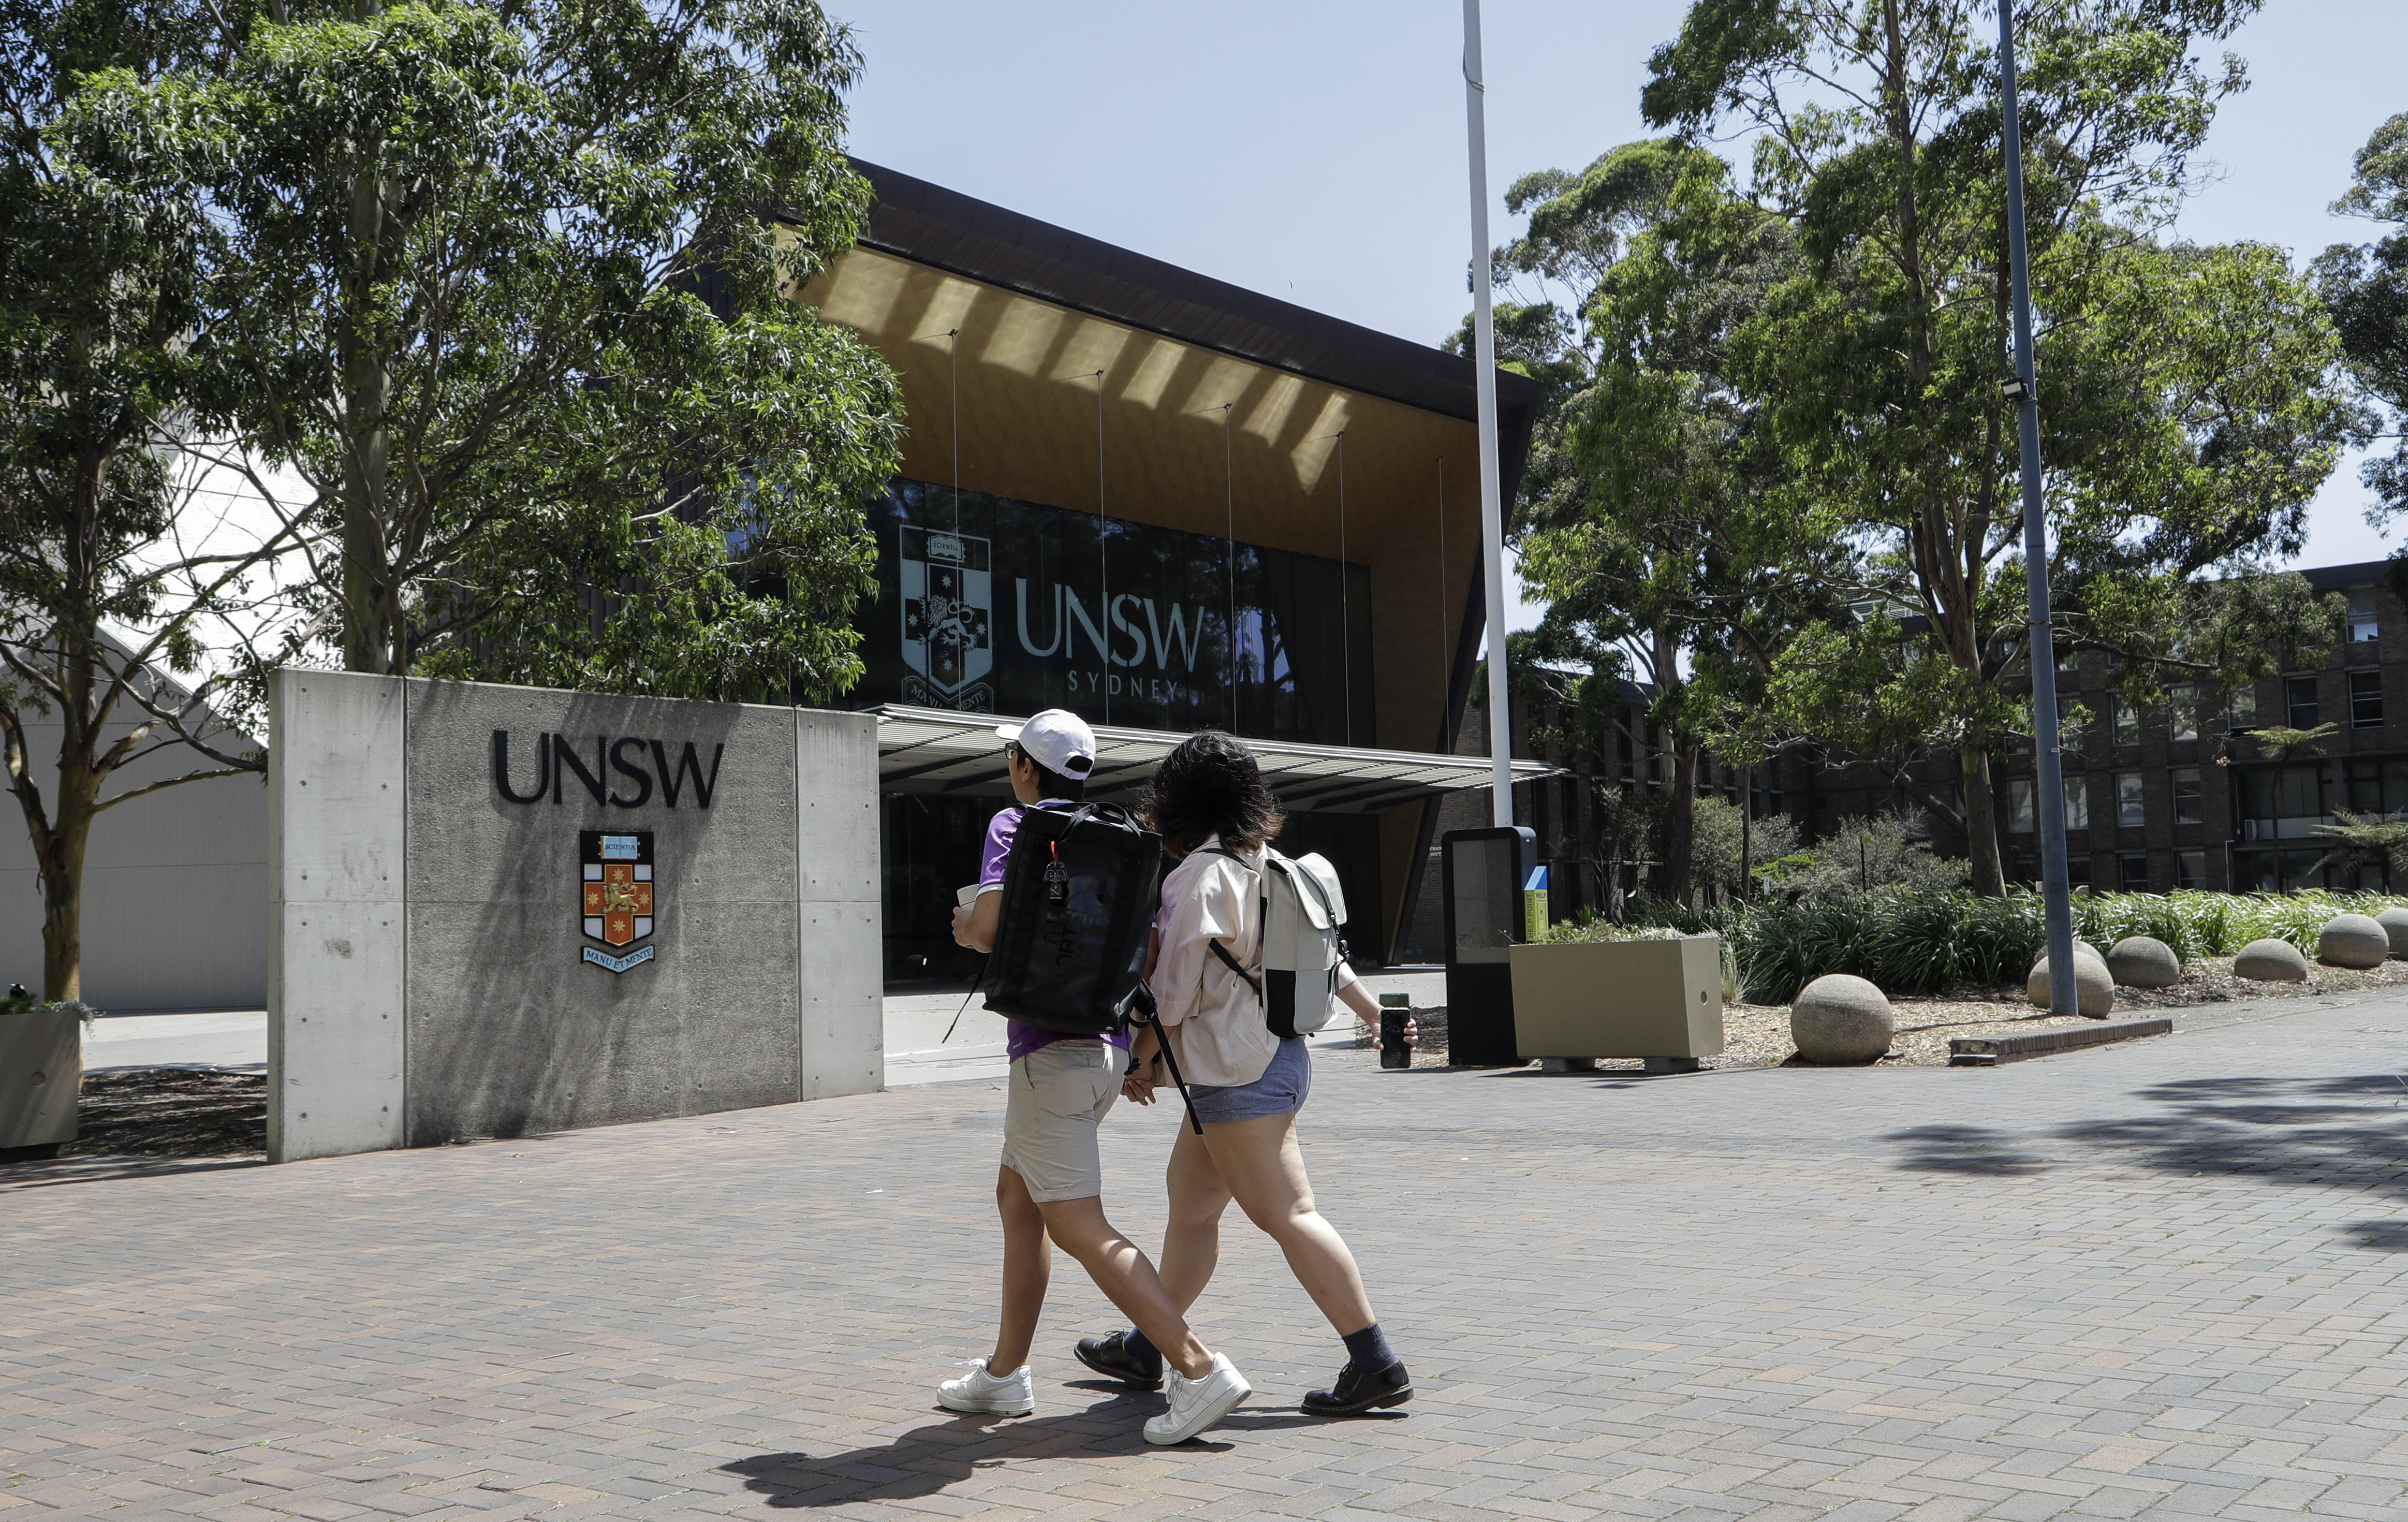 澳洲周一将学生签证的申请费用调高125%到1,600澳元以减缓移民流入。美联社